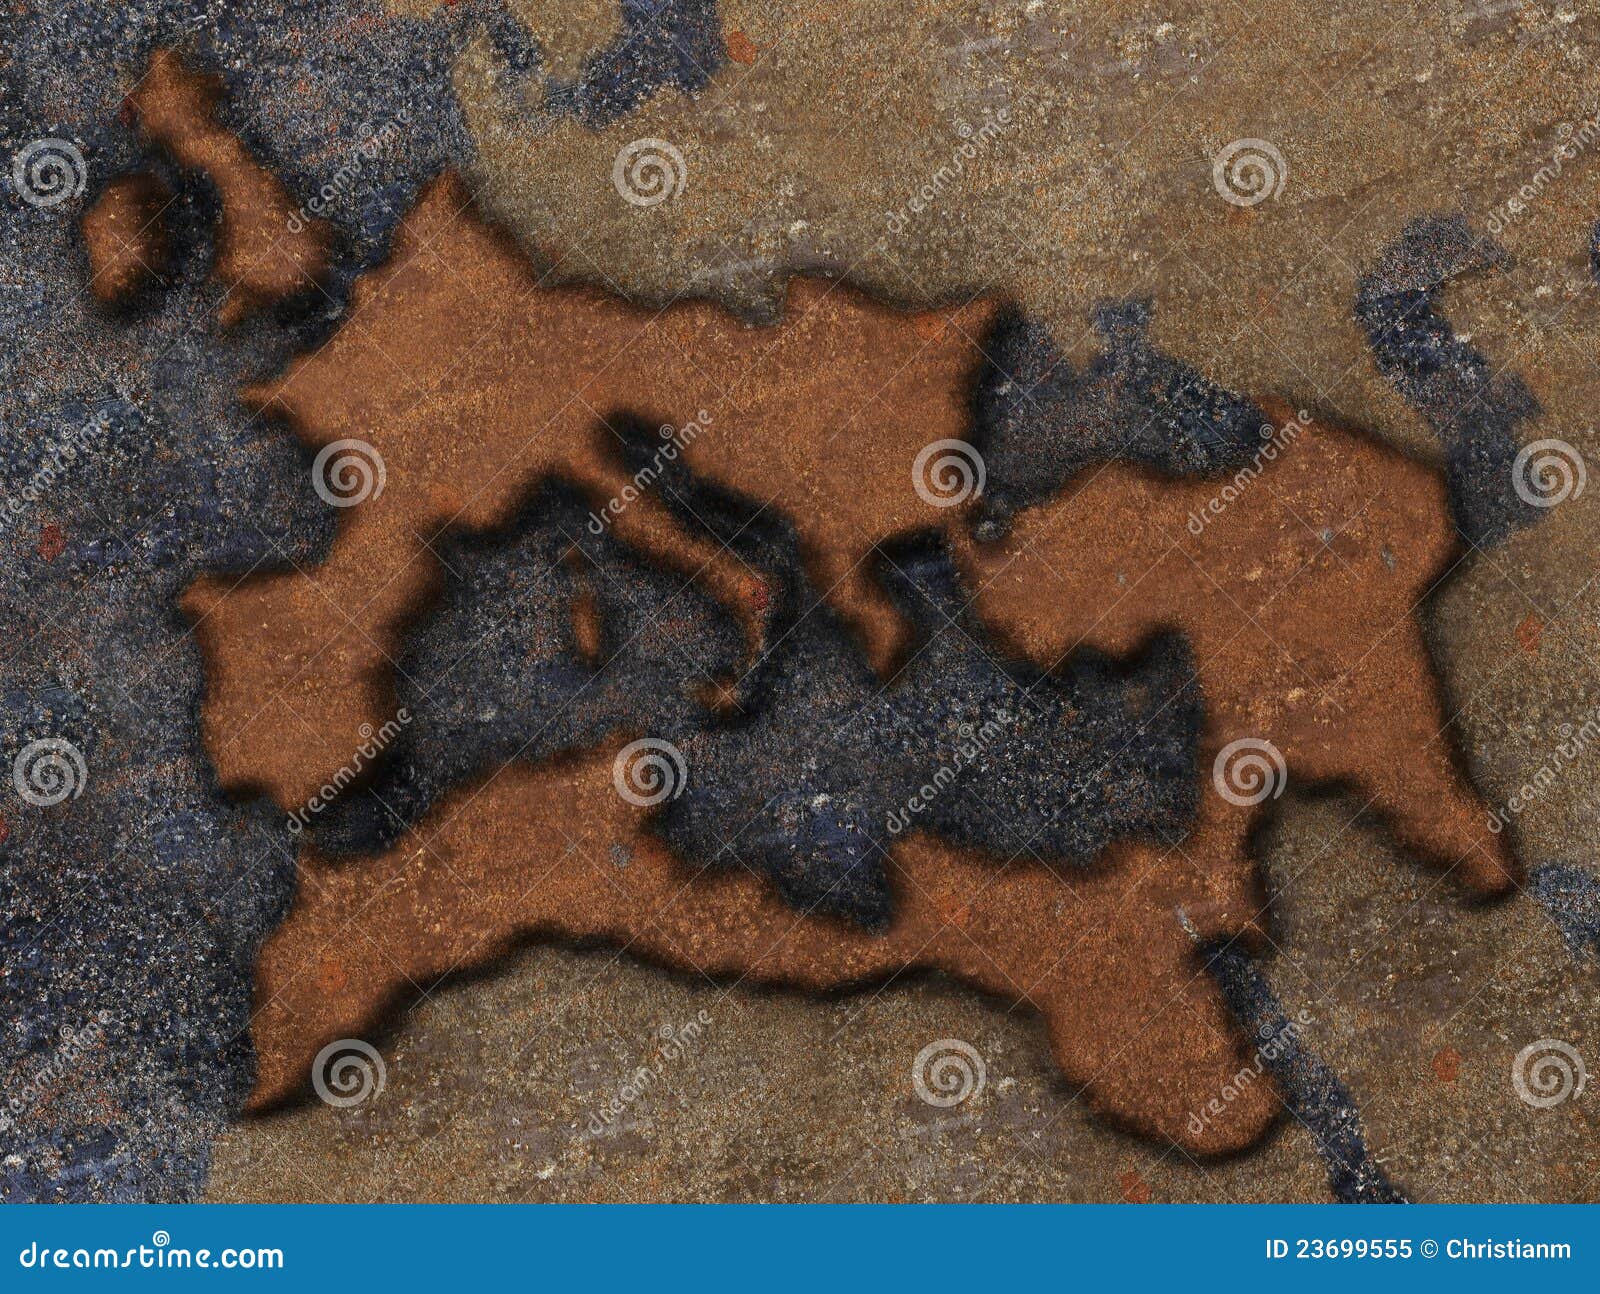 Roman Kaart van het Imperium. De kaart van Grunge van het roman imperium, die op een roestige metaalplaat wordt gegraveerd.